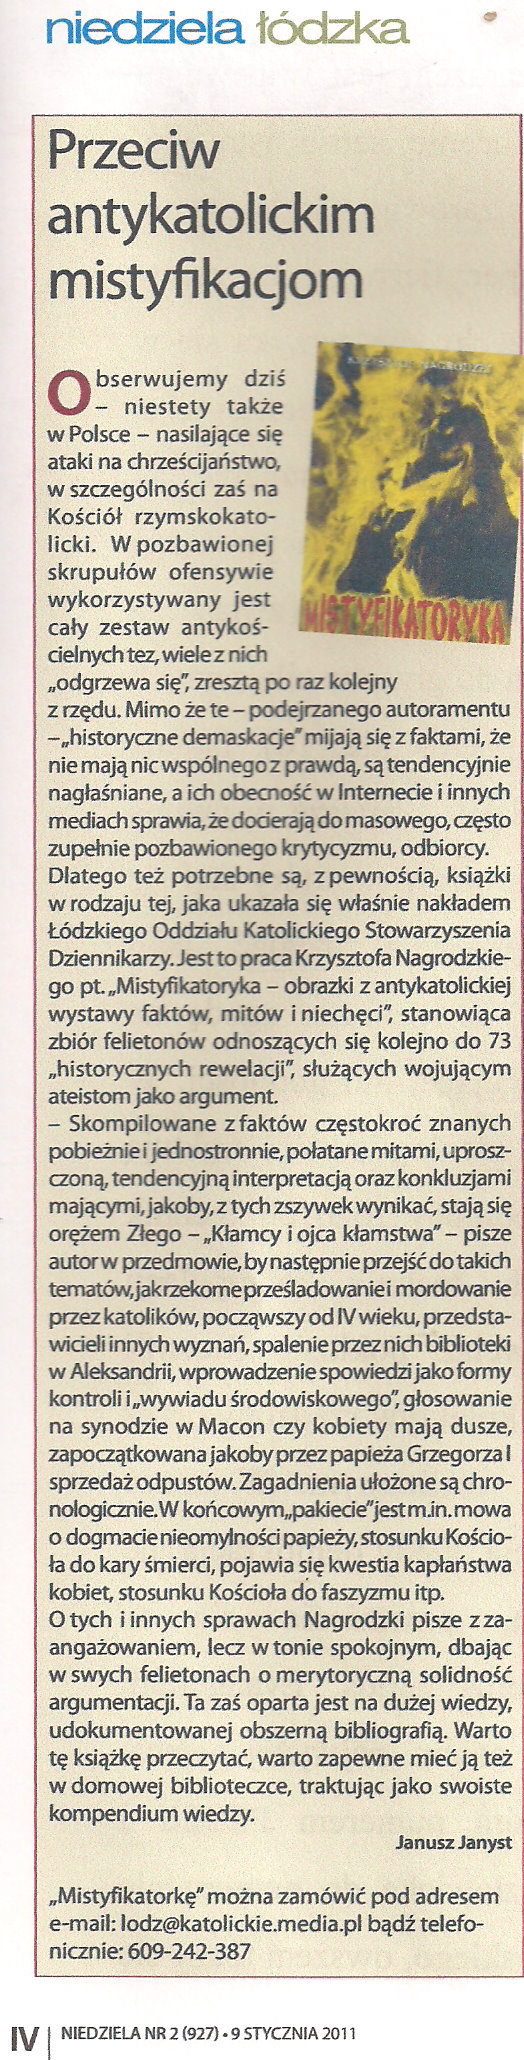 Niedziela Łódzka nr 2 z 2011